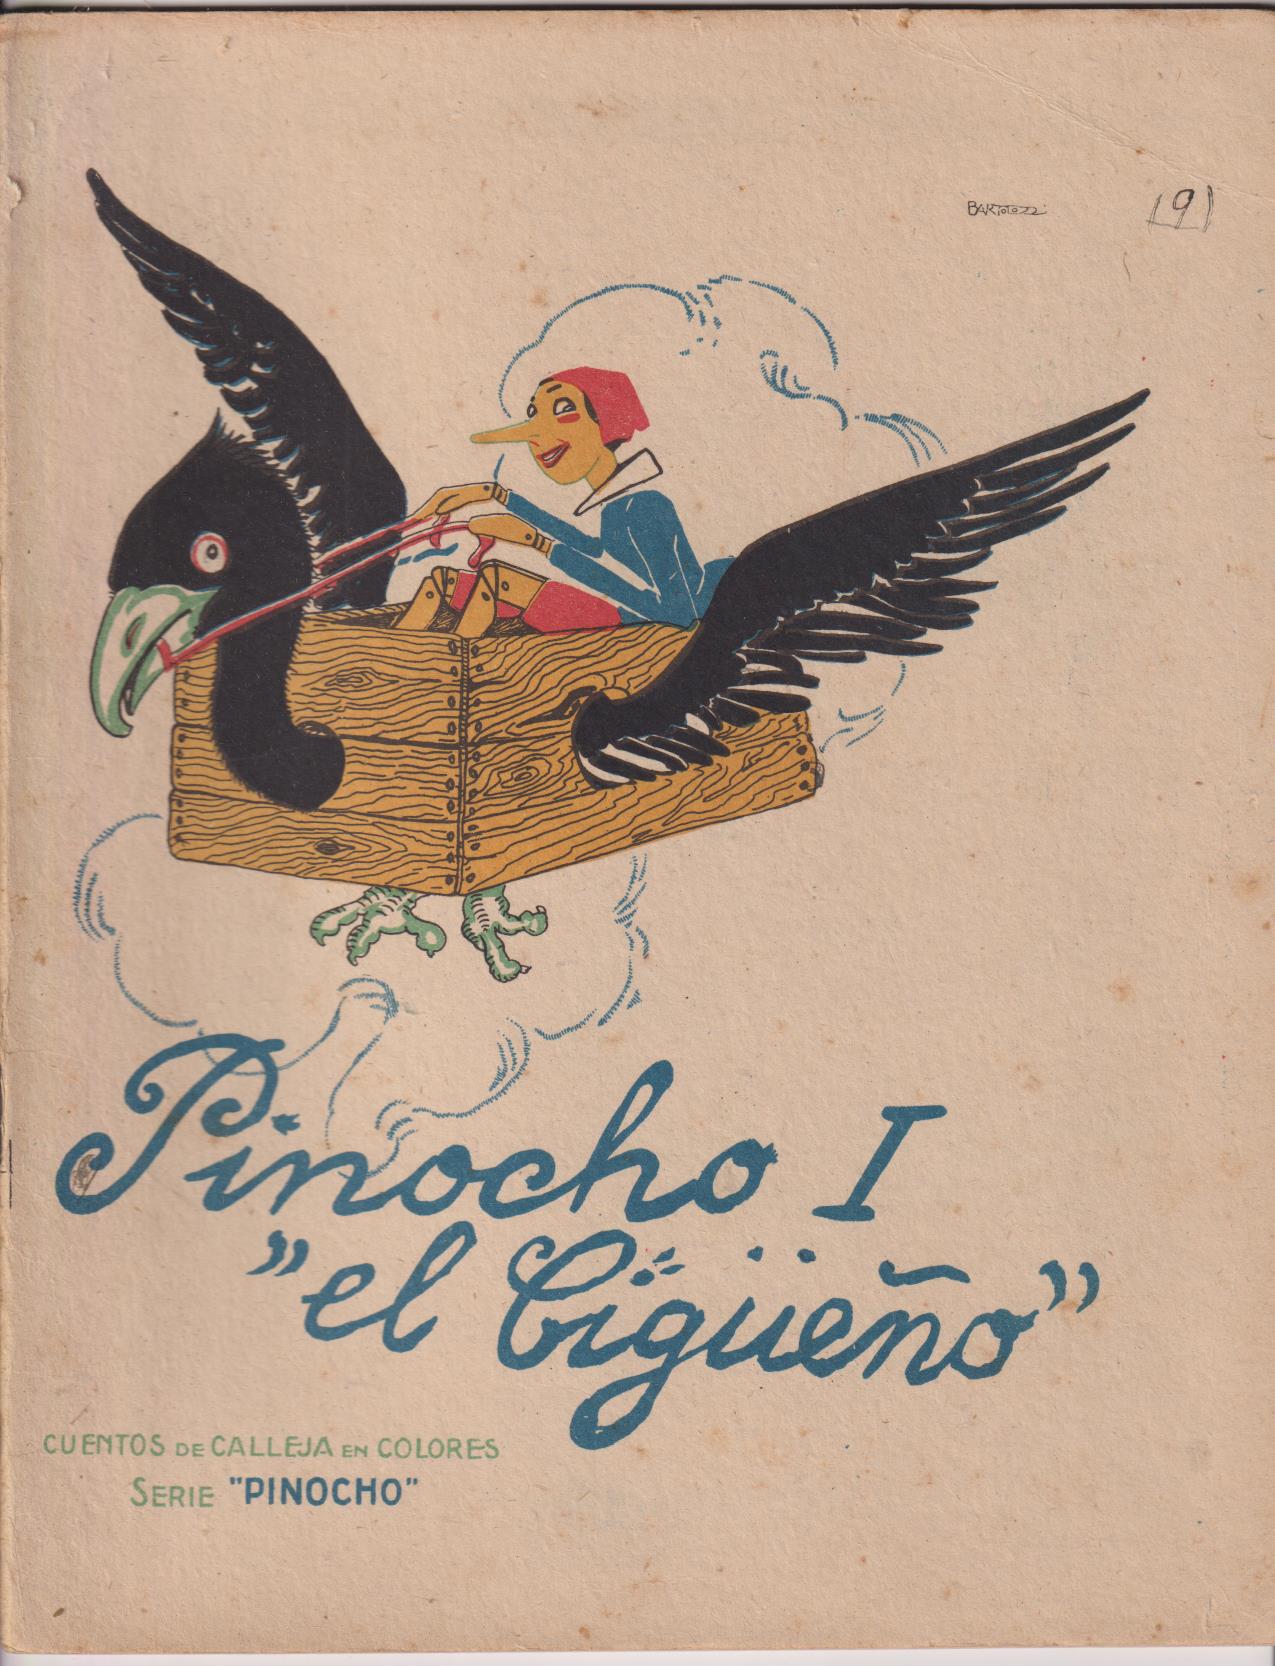 Pinocho nº 9. Pinocho I El Cigüeño. 1ª Edición Calleja 1919. (28x44) 16 páginas. DIFÍCIL